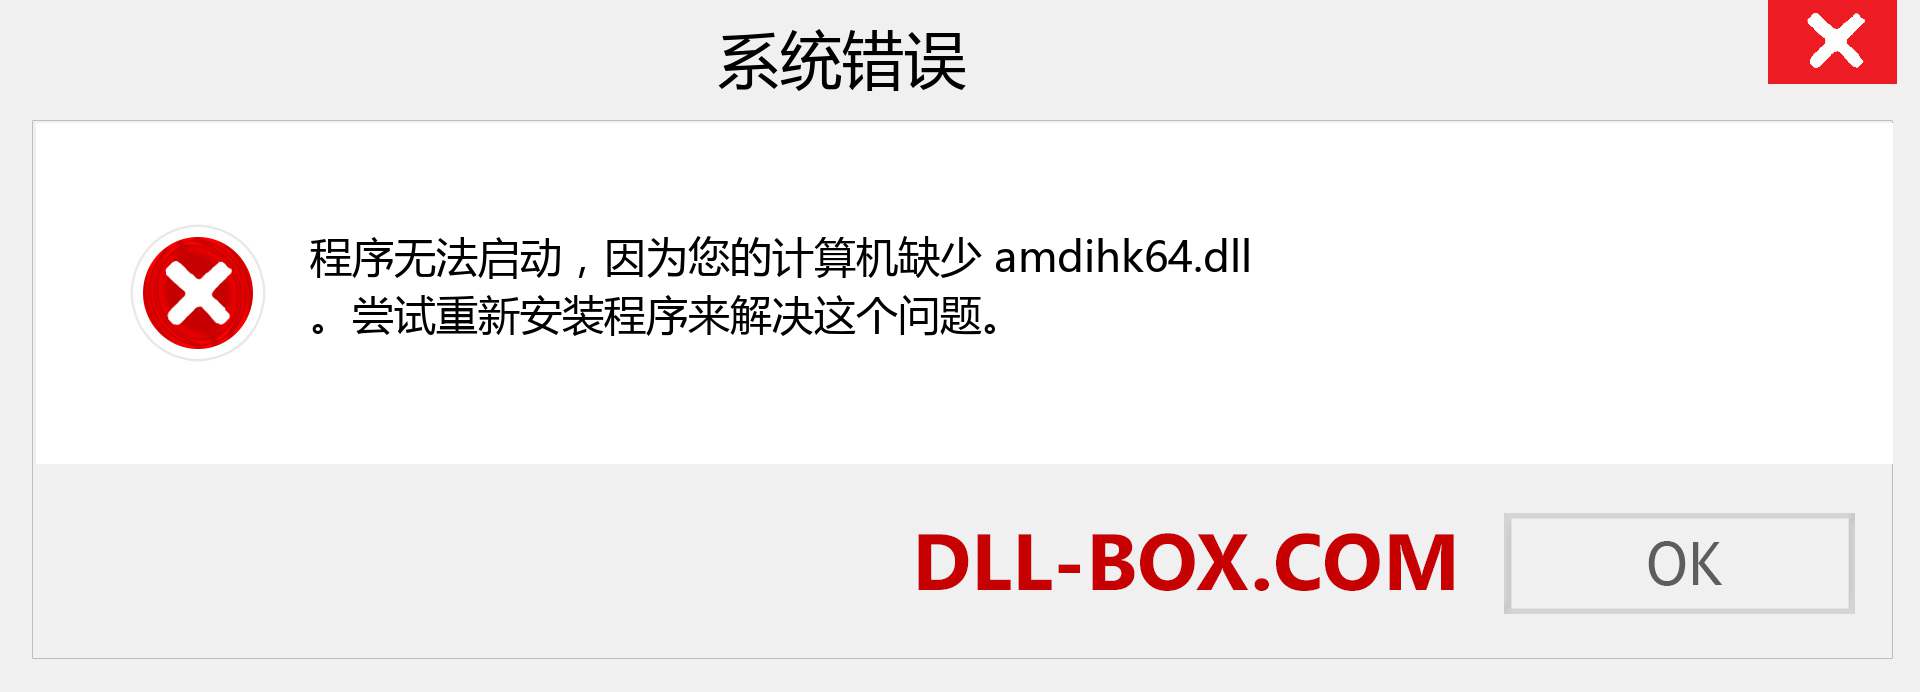 amdihk64.dll 文件丢失？。 适用于 Windows 7、8、10 的下载 - 修复 Windows、照片、图像上的 amdihk64 dll 丢失错误